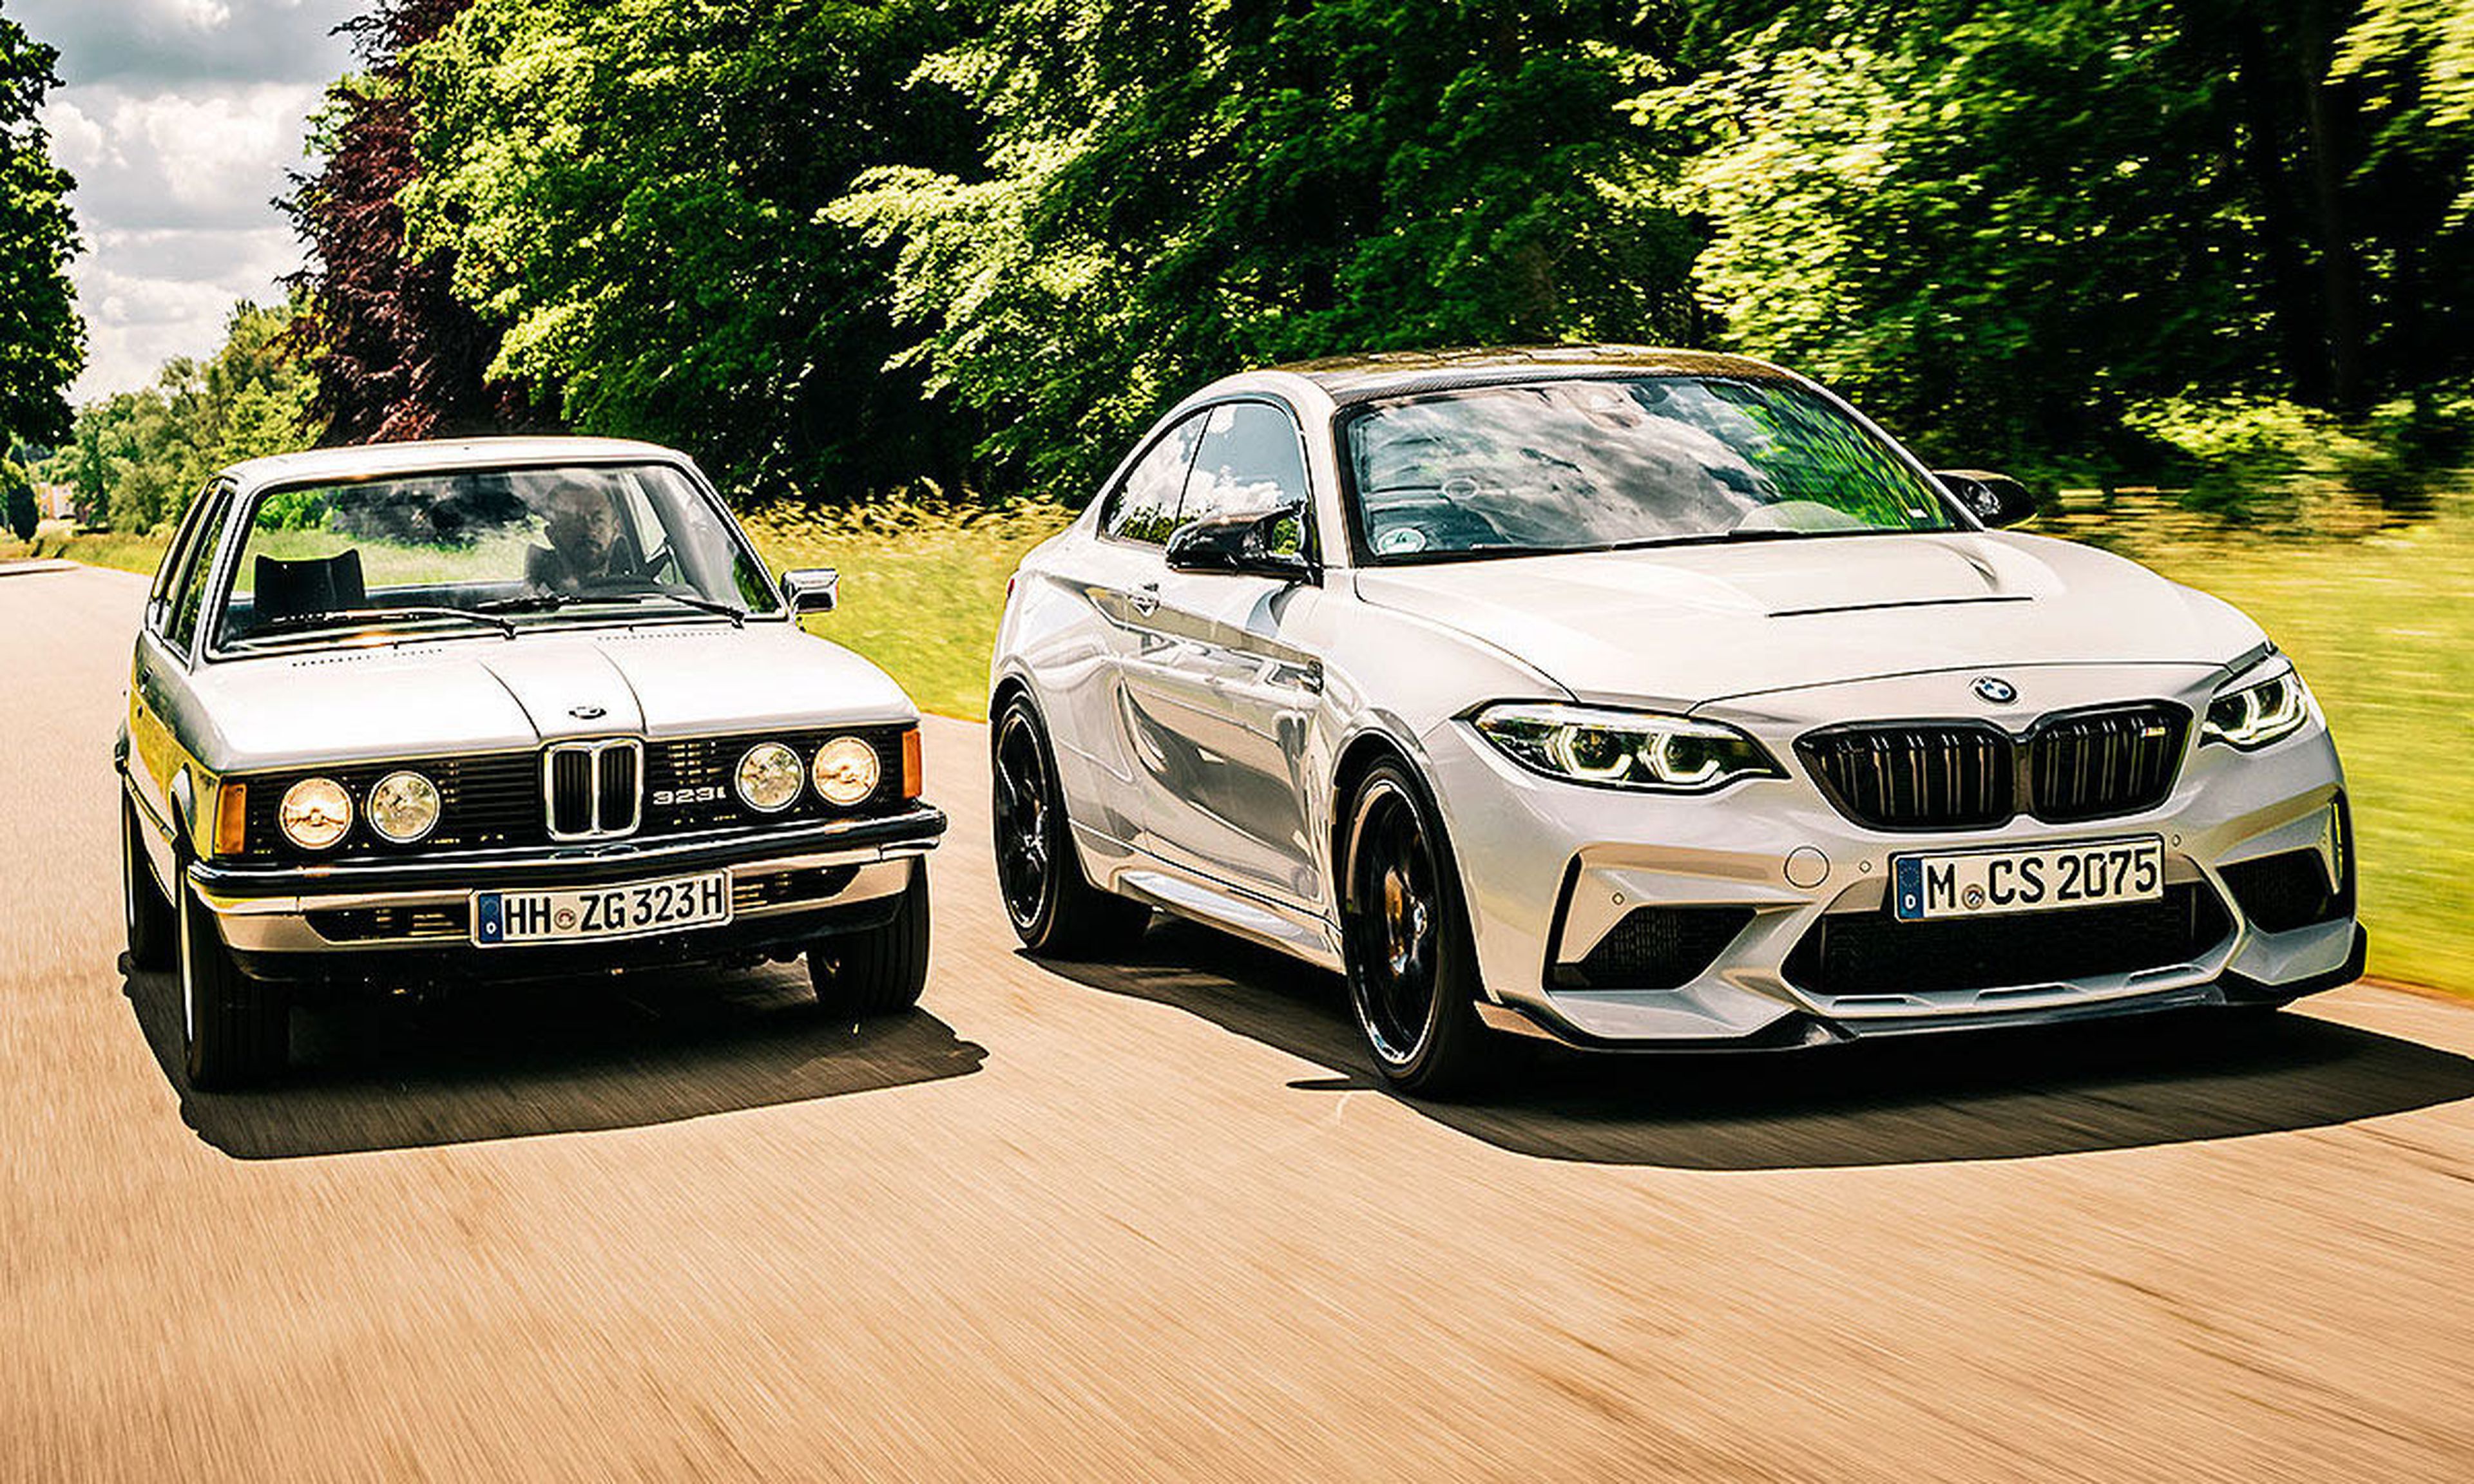 comparativa BMW M2 CS contra 323i E21